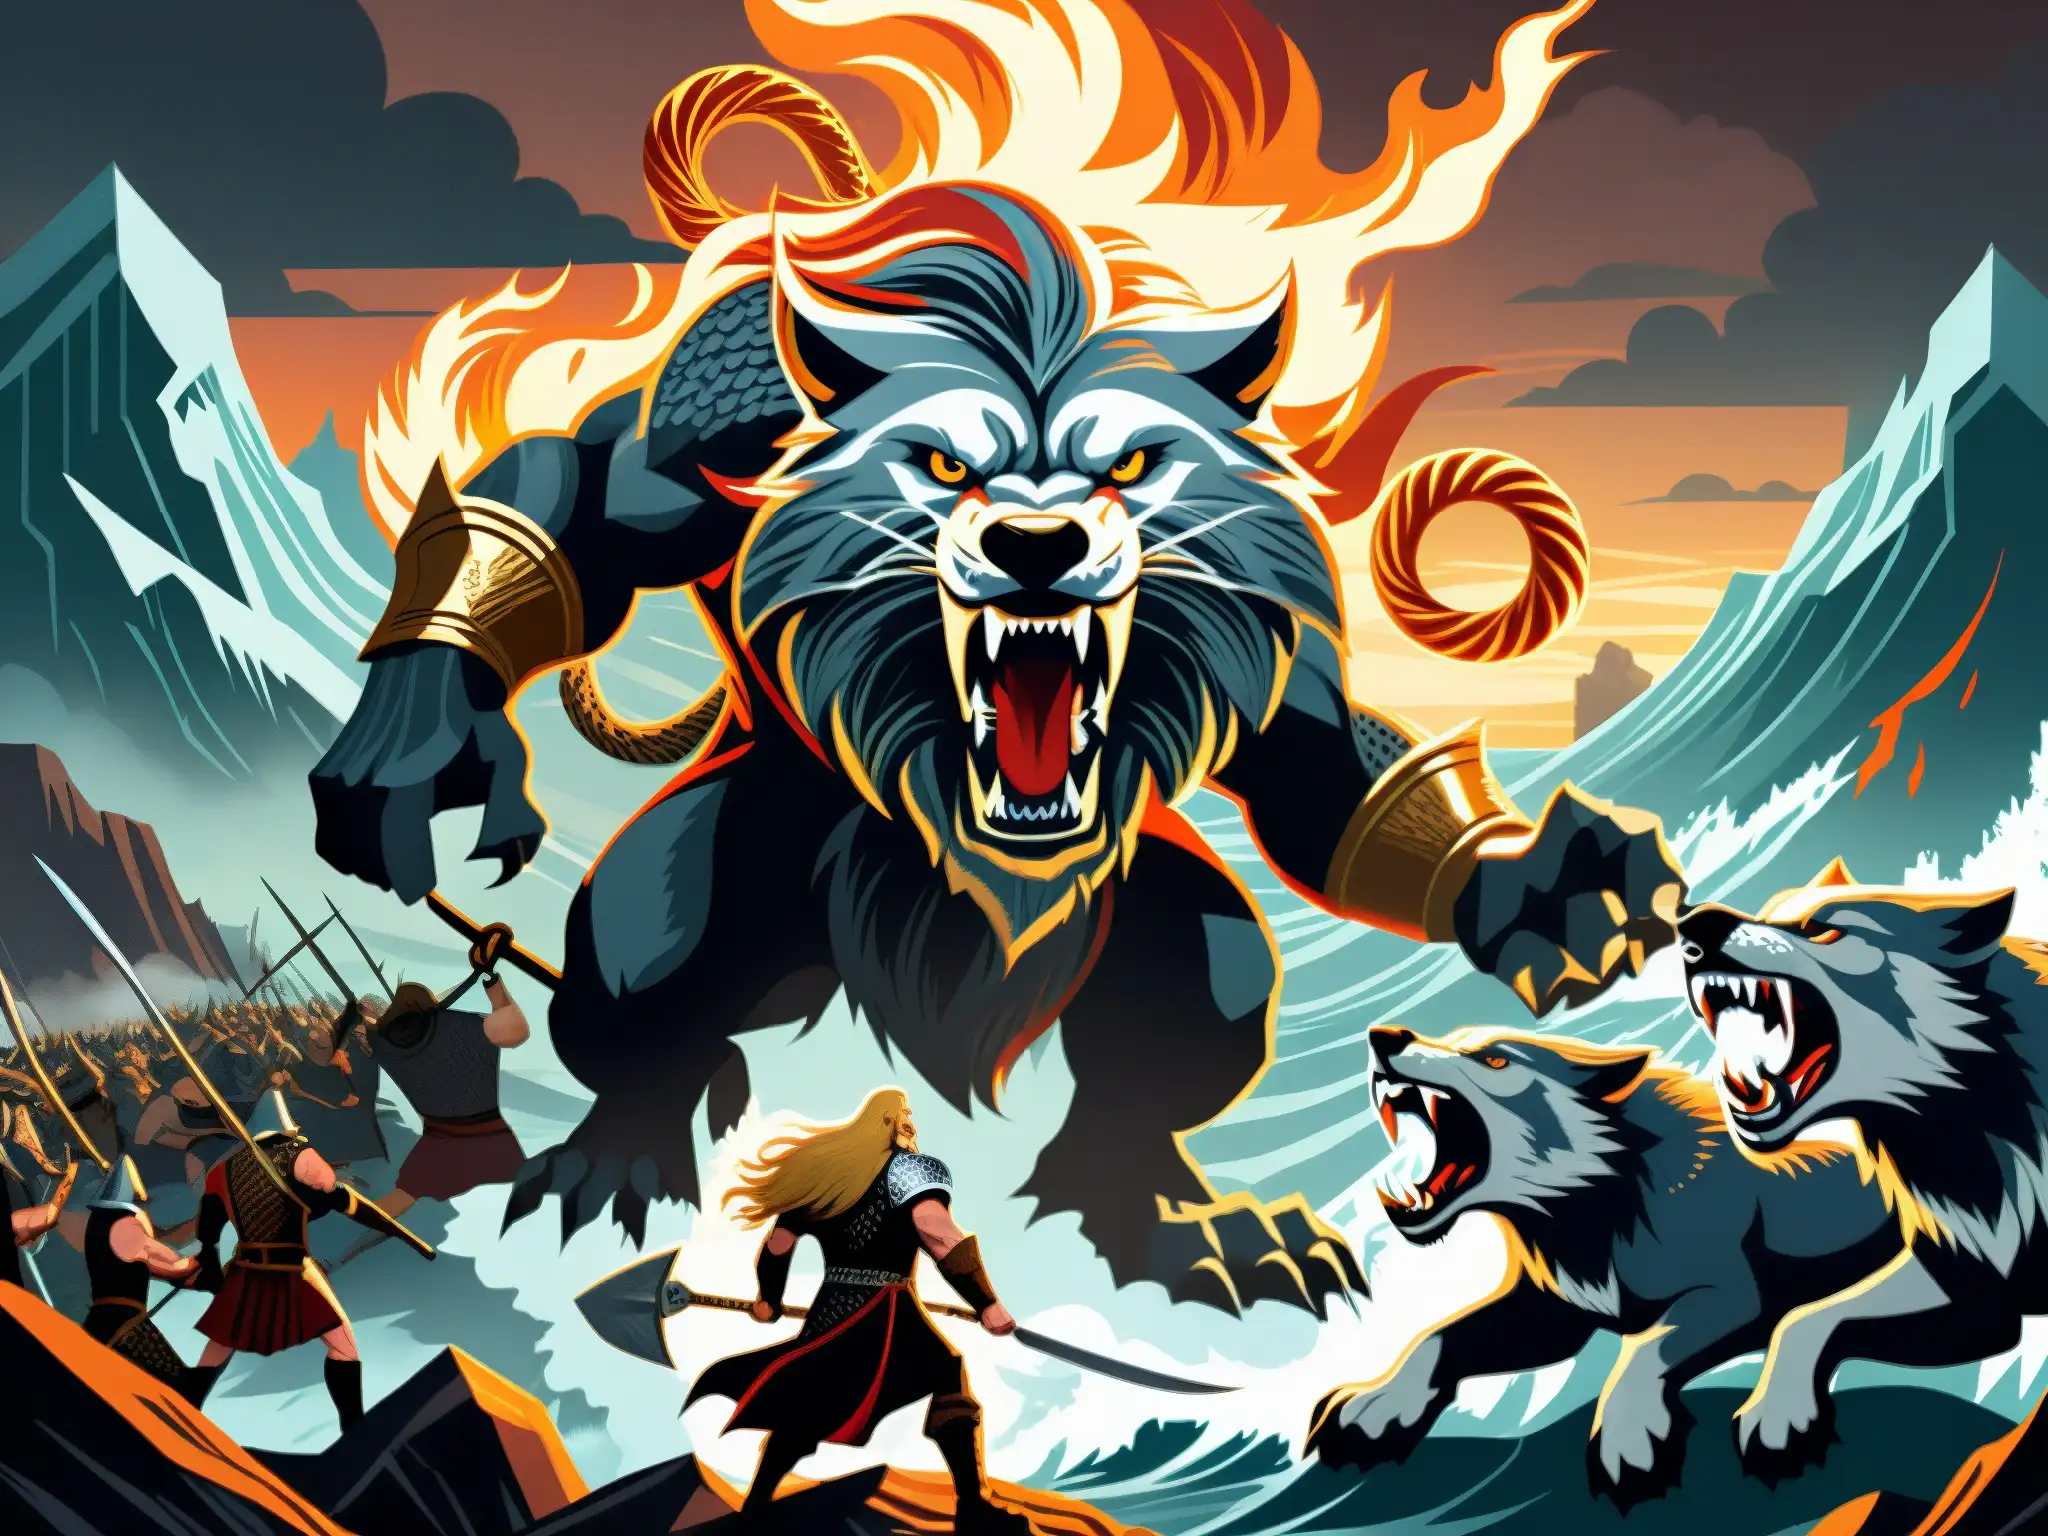 Épica ilustración del apocalipsis vikingo Ragnarök mito, con dioses, gigantes y bestias en un paisaje caótico y ardiente